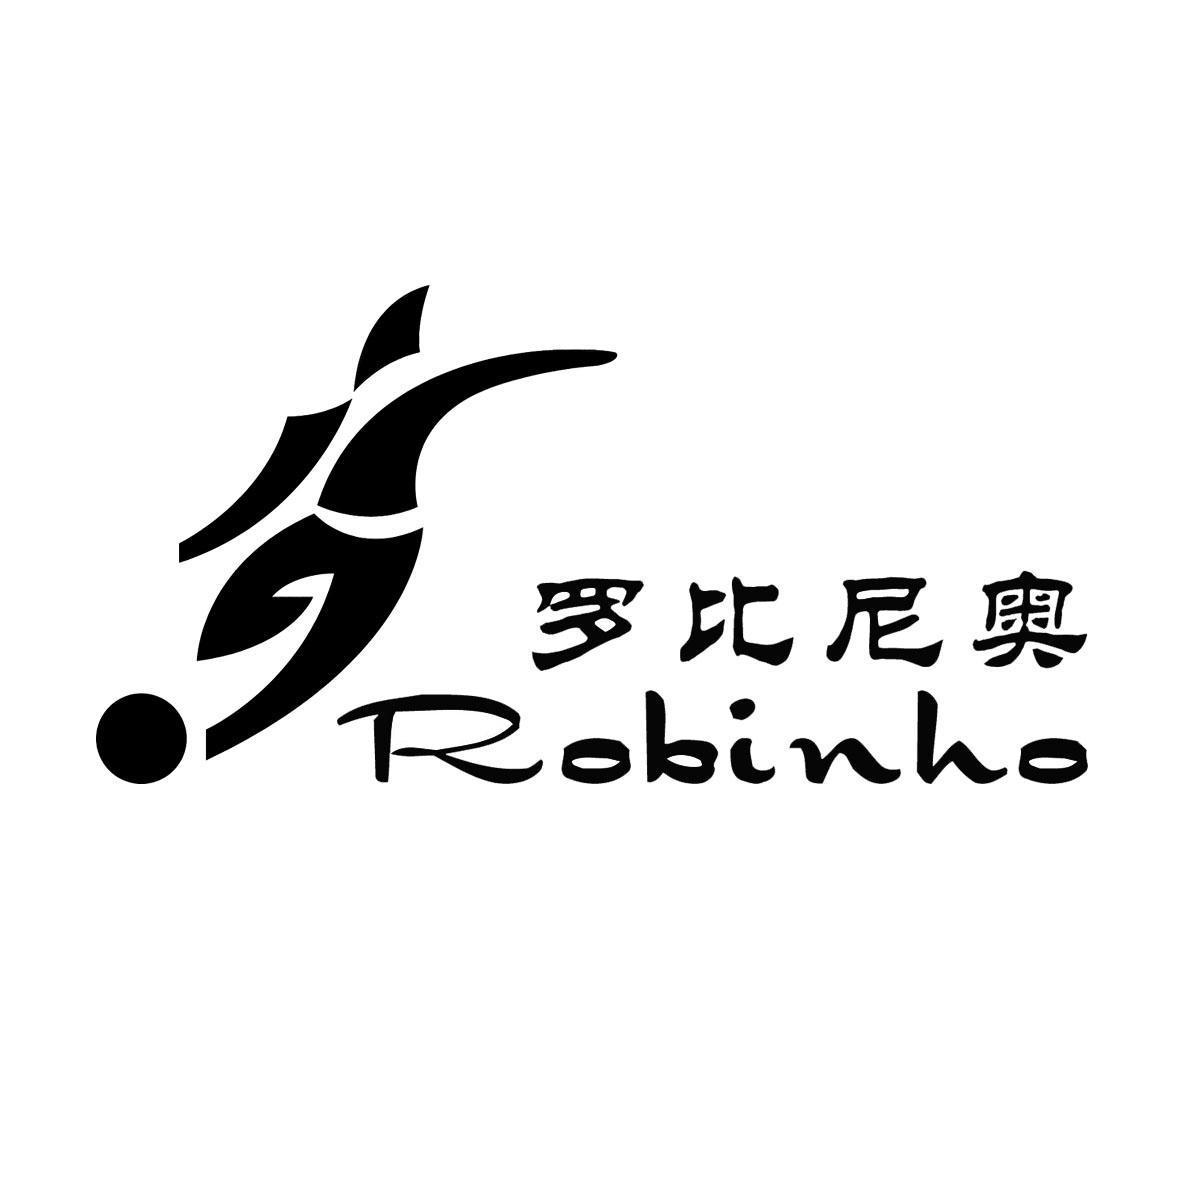 罗比尼奥 ROBINHO